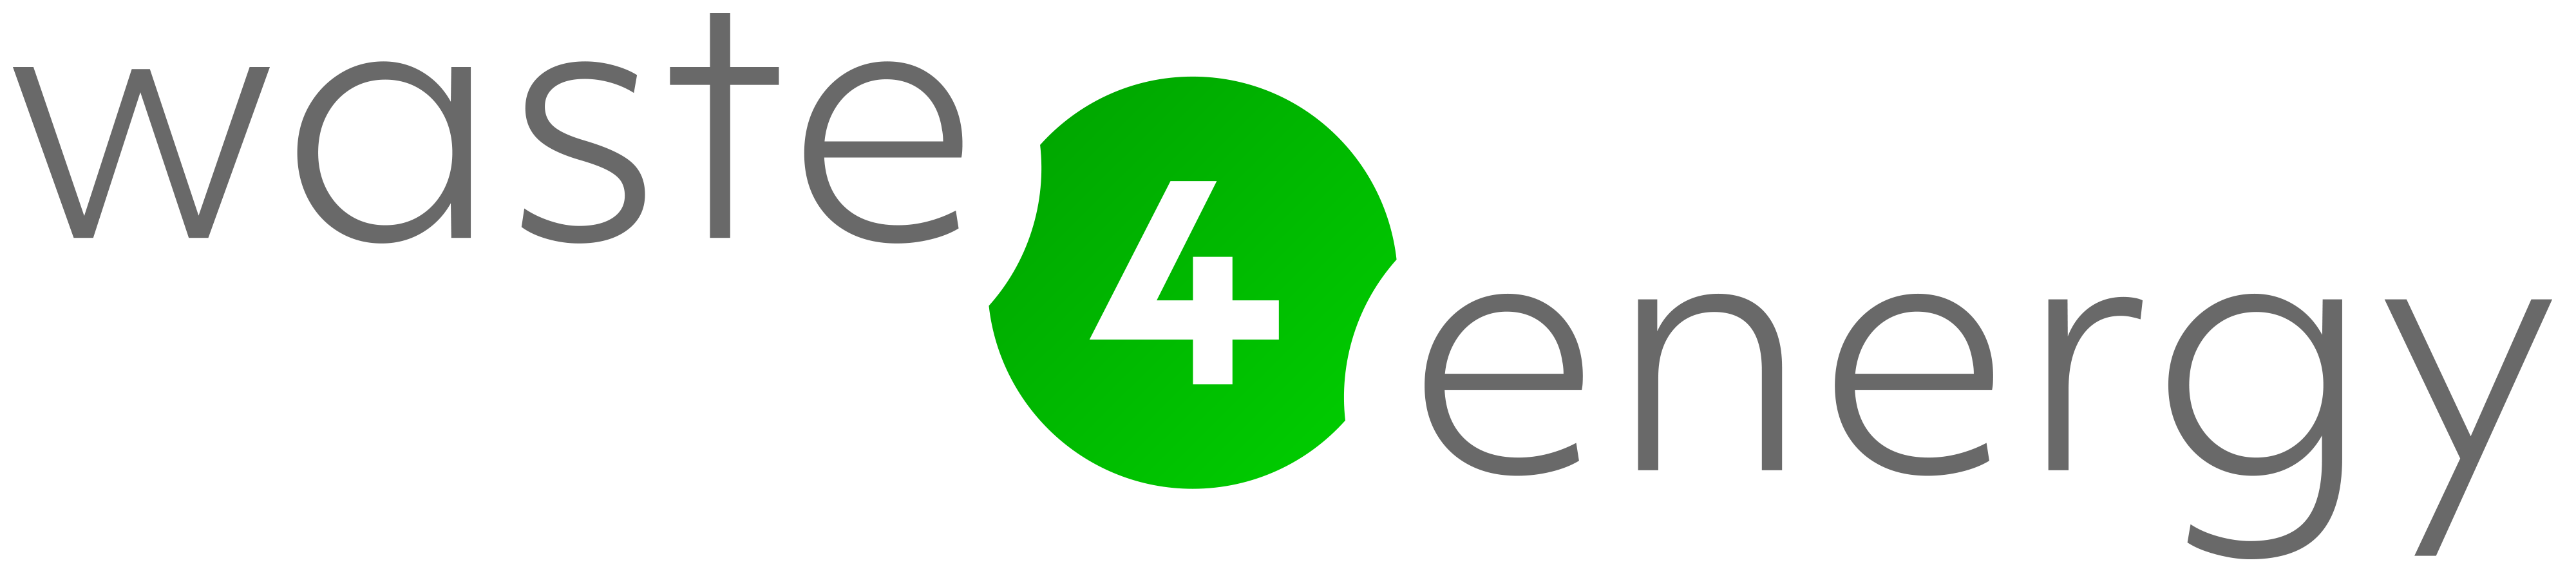 Waste4Energy logo